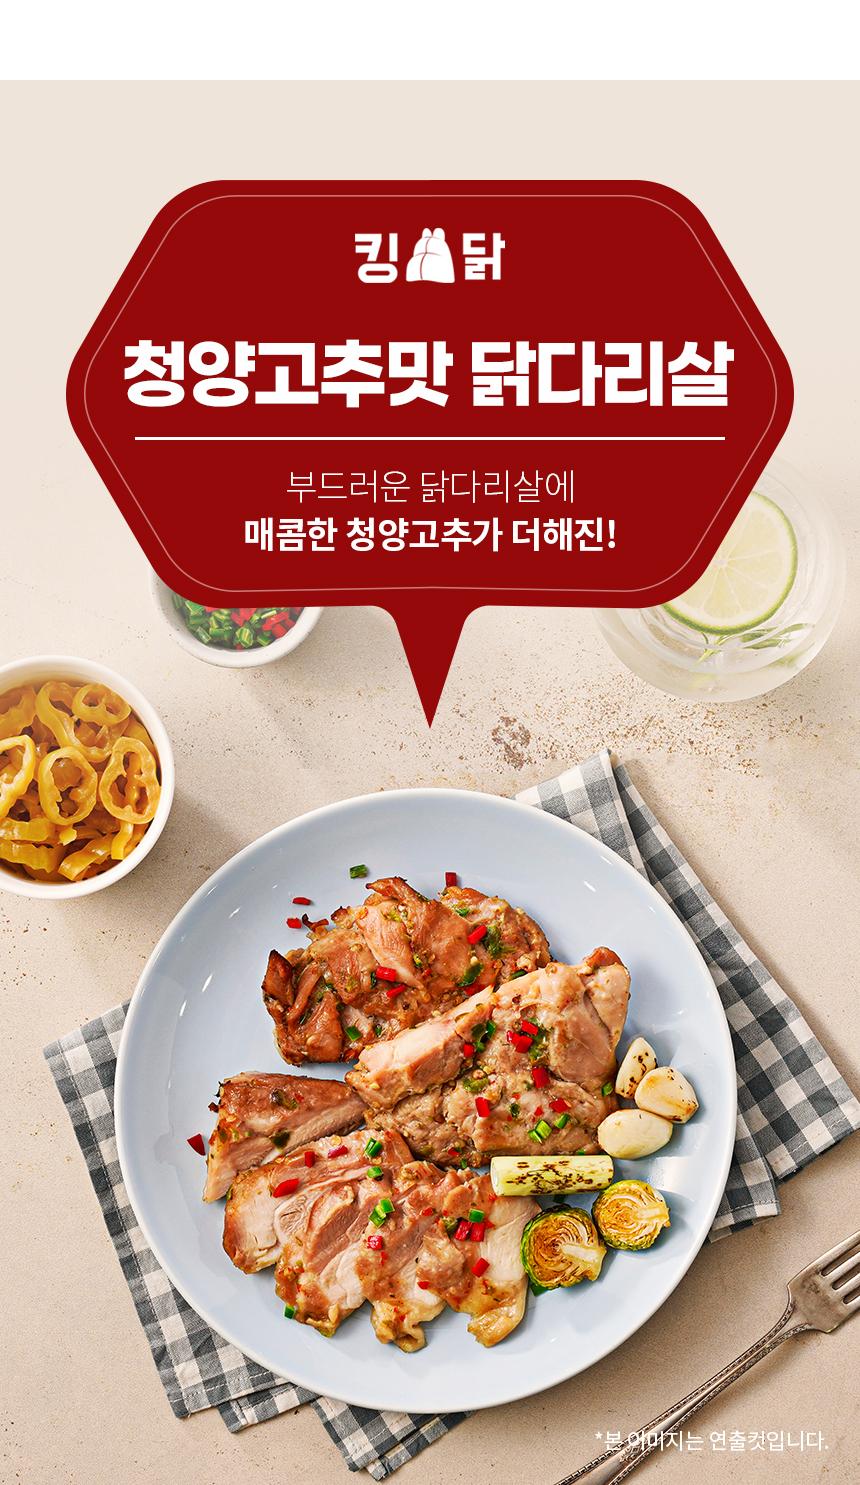 韓國食品-[킹닭] 닭다리살 (청양고추맛) 100g